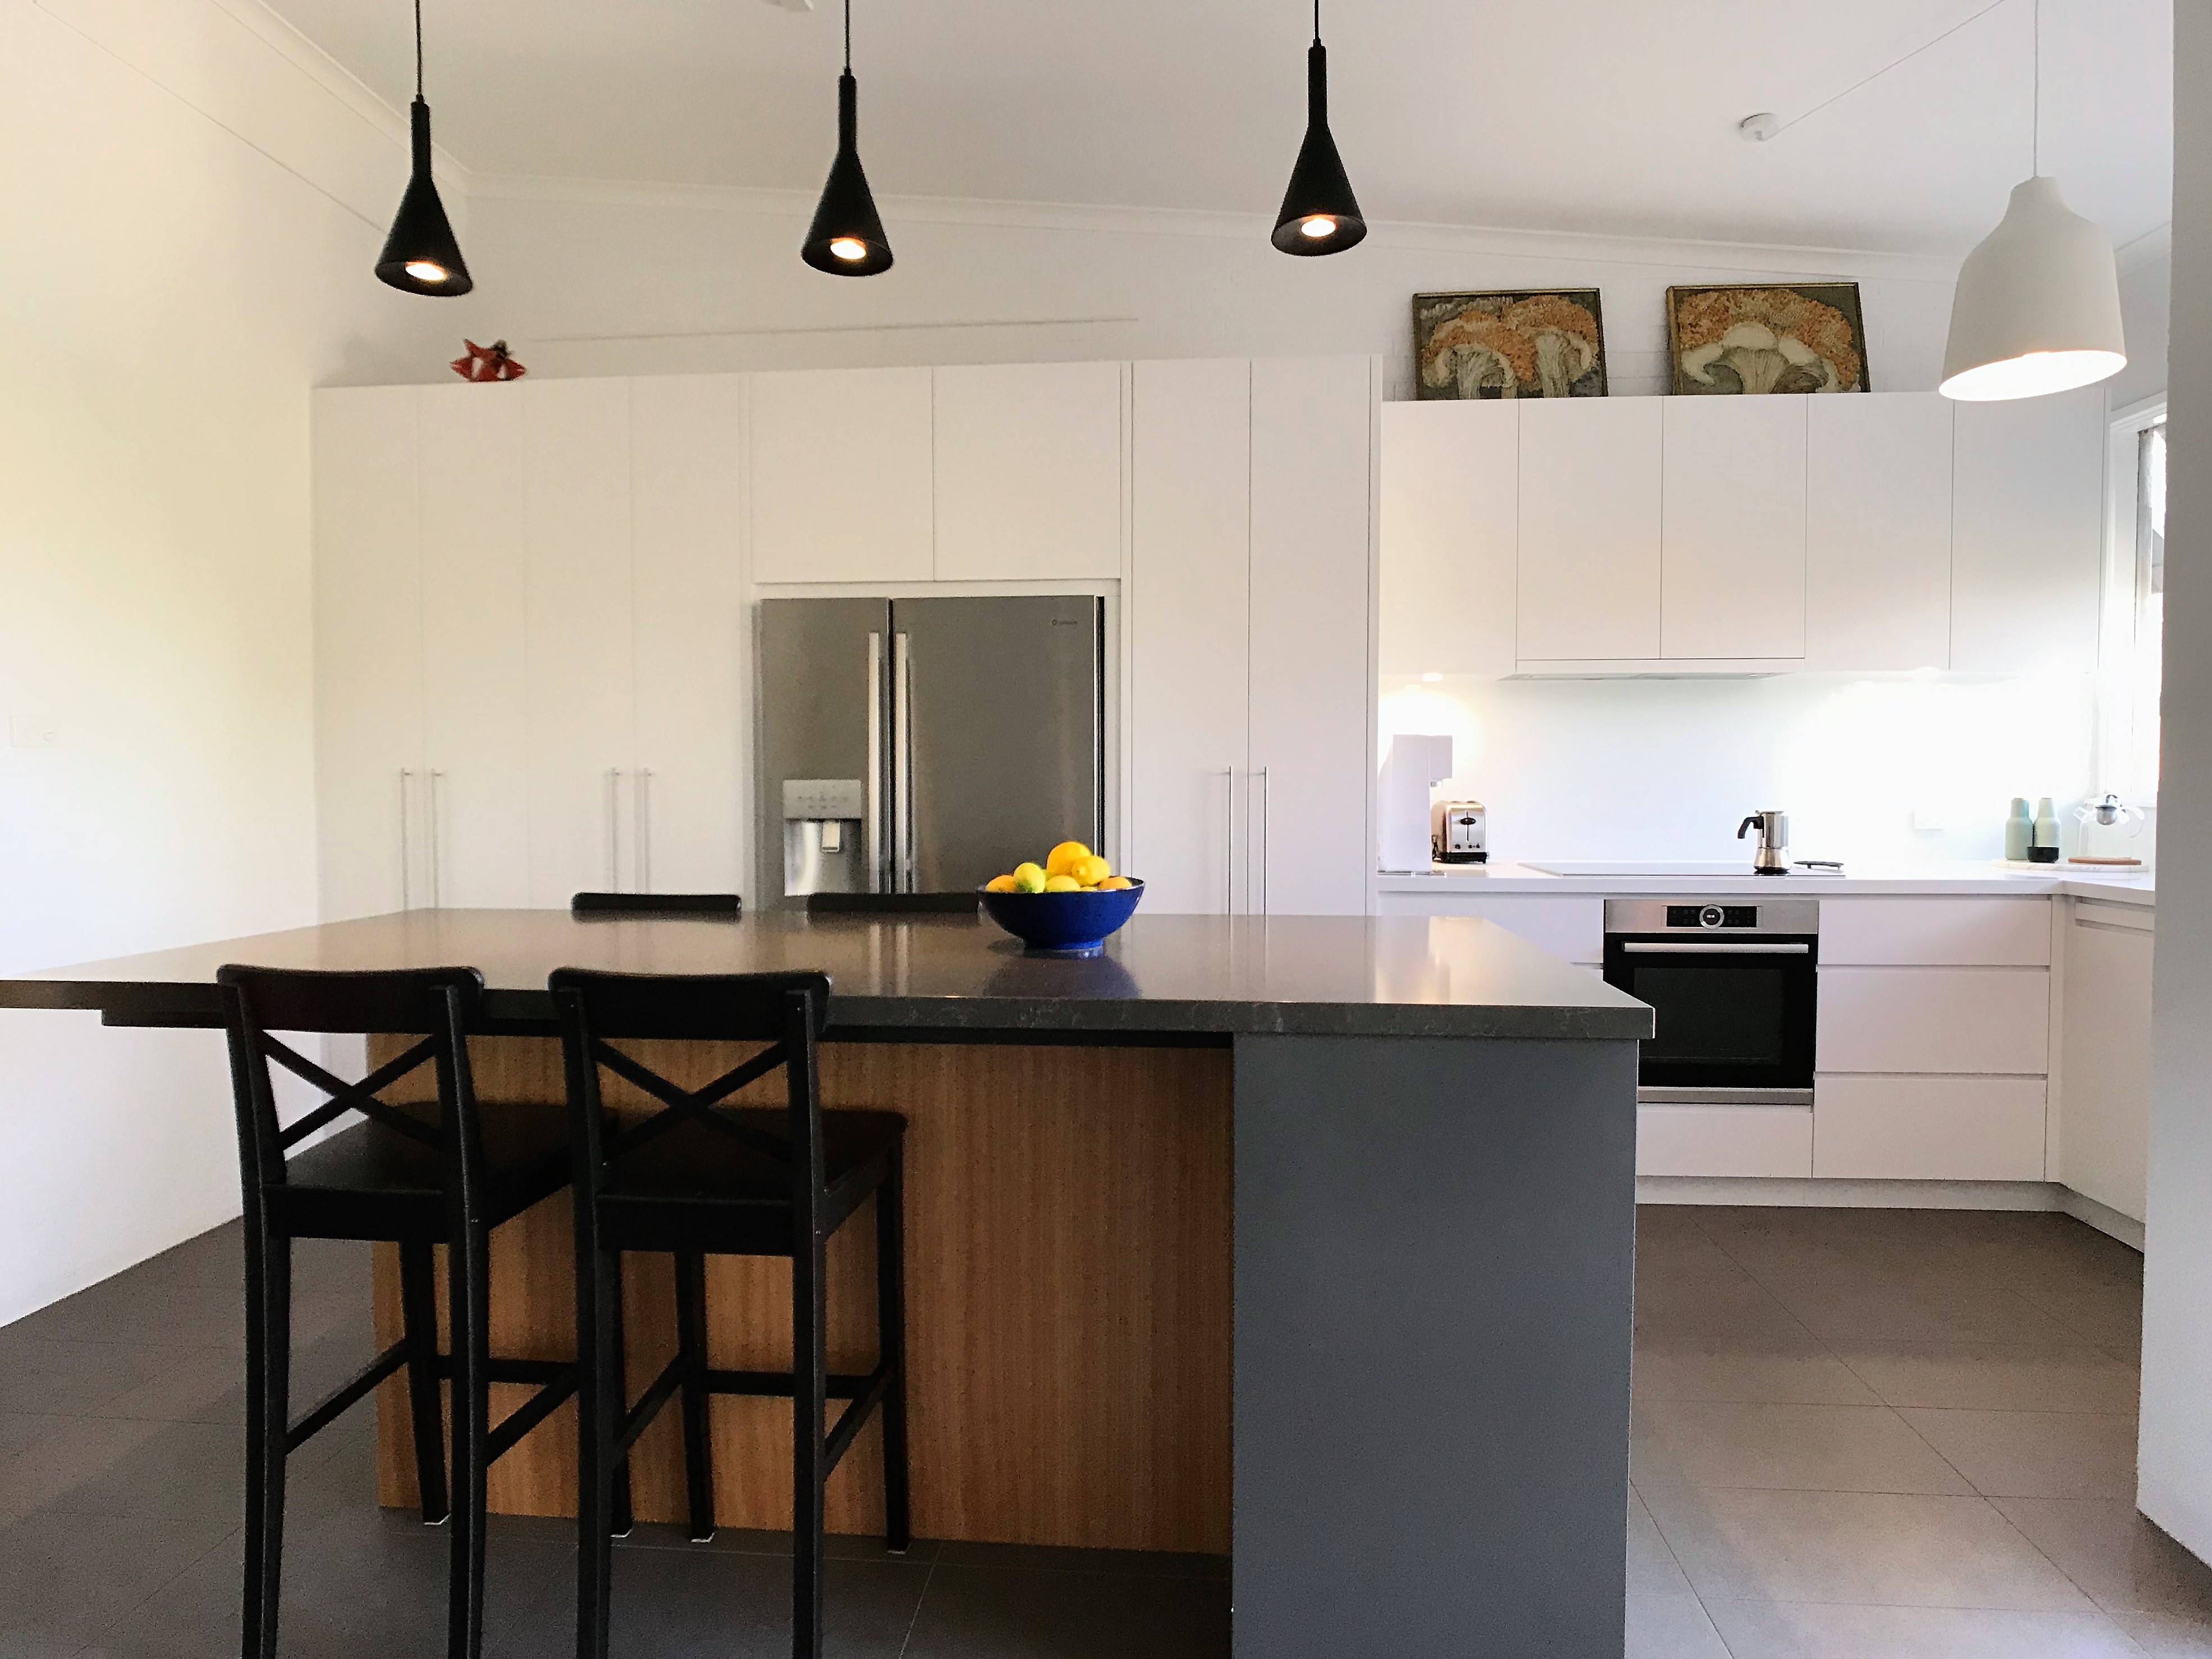 Kitchen Renovation Cost Australia